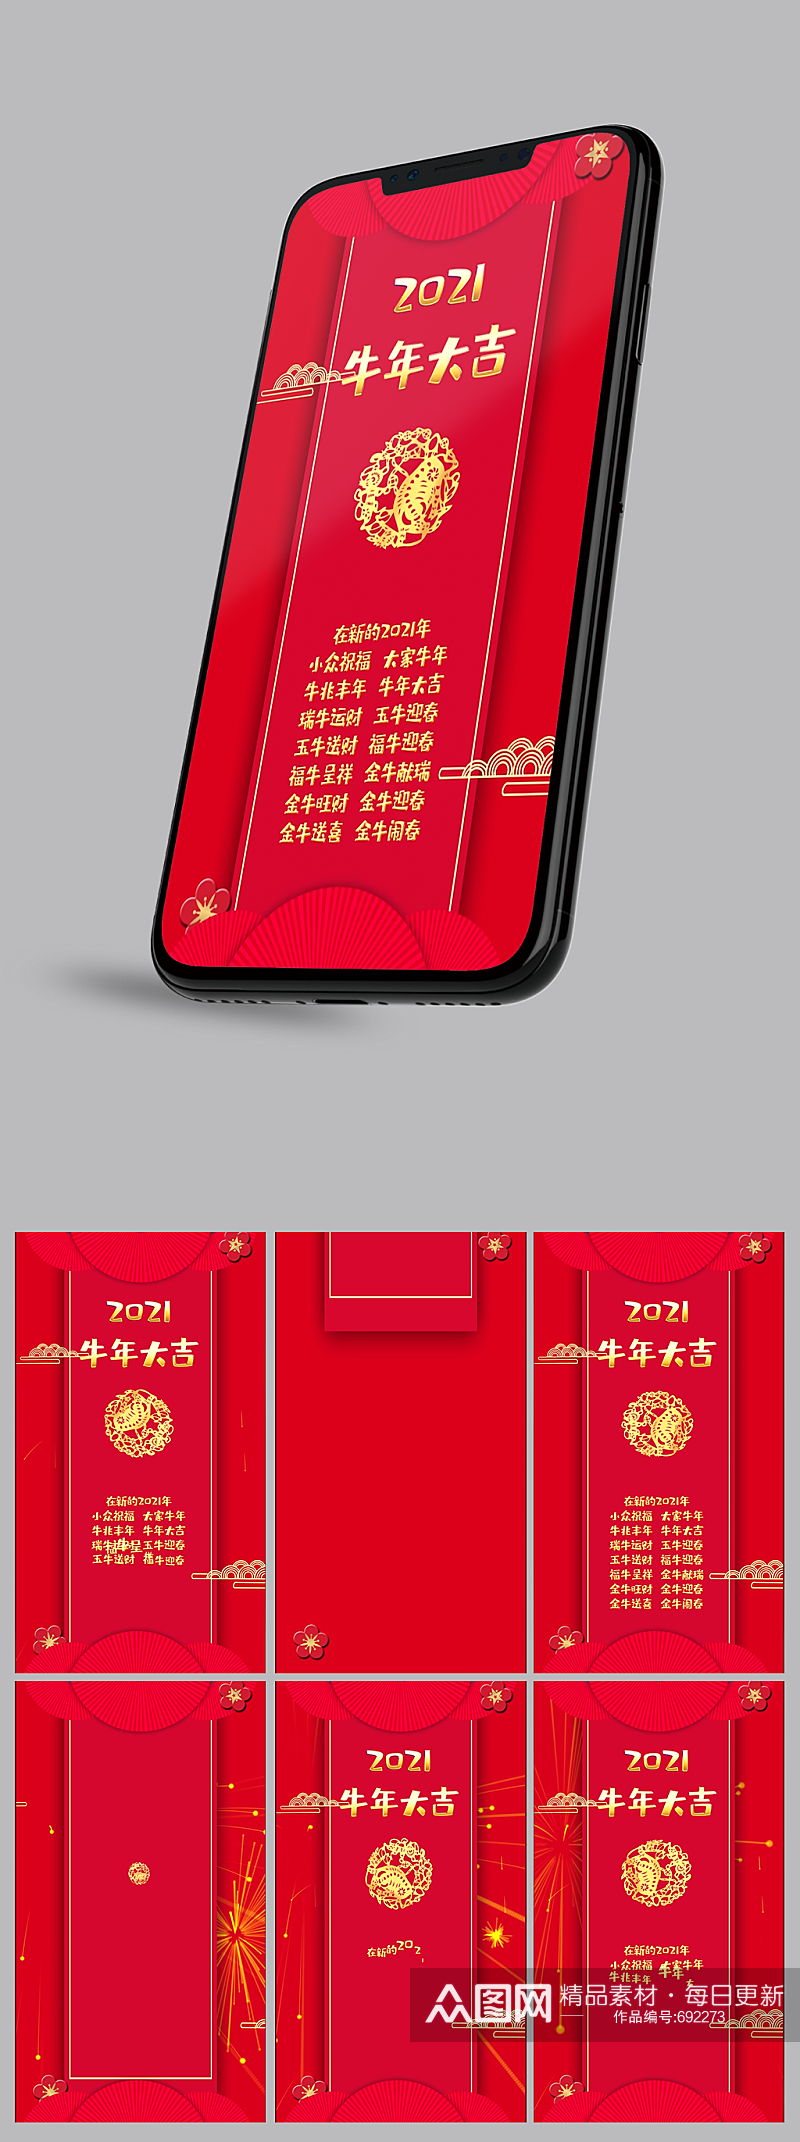 新年快乐红包式简洁卡通手机微信拜年视频模板素材